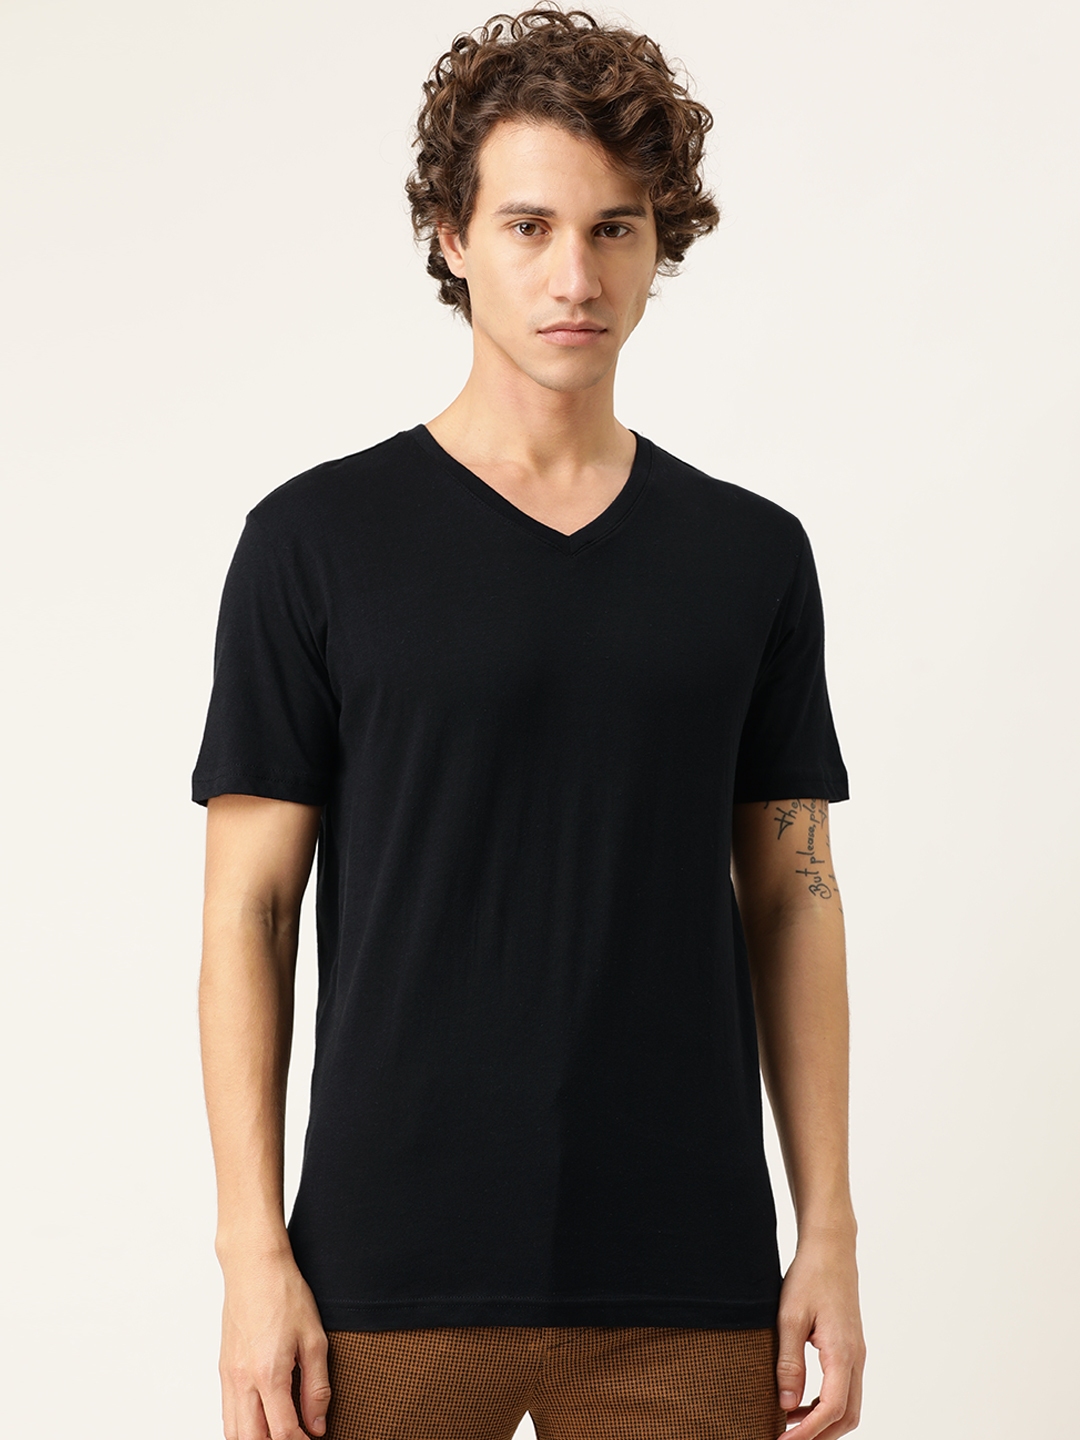 Buy FOREVER 21 Men Black Solid V Neck T Shirt - Tshirts for Men ...